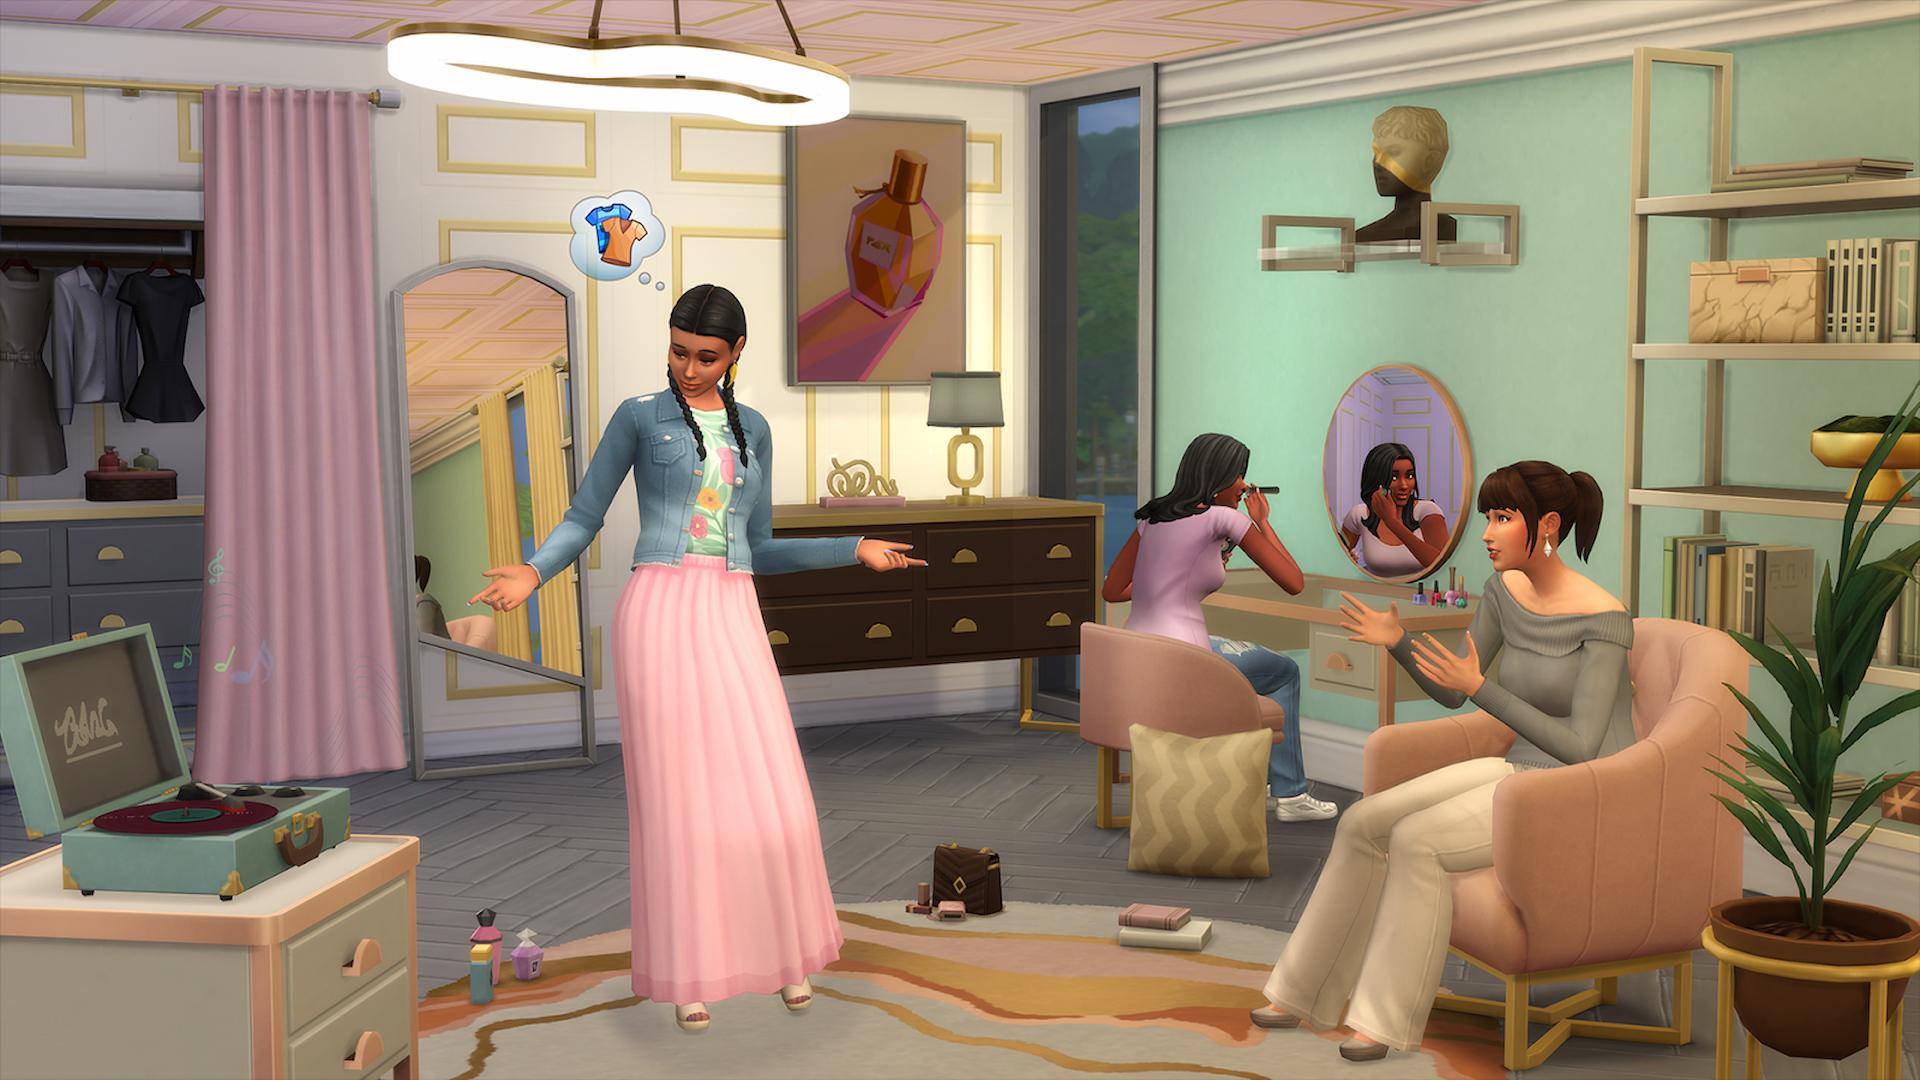 Sims 4 Modern Luxe Kit Chụp ảnh chụp màn hình hiển thị Sims trong một cửa hàng, thử quần áo và trang điểm